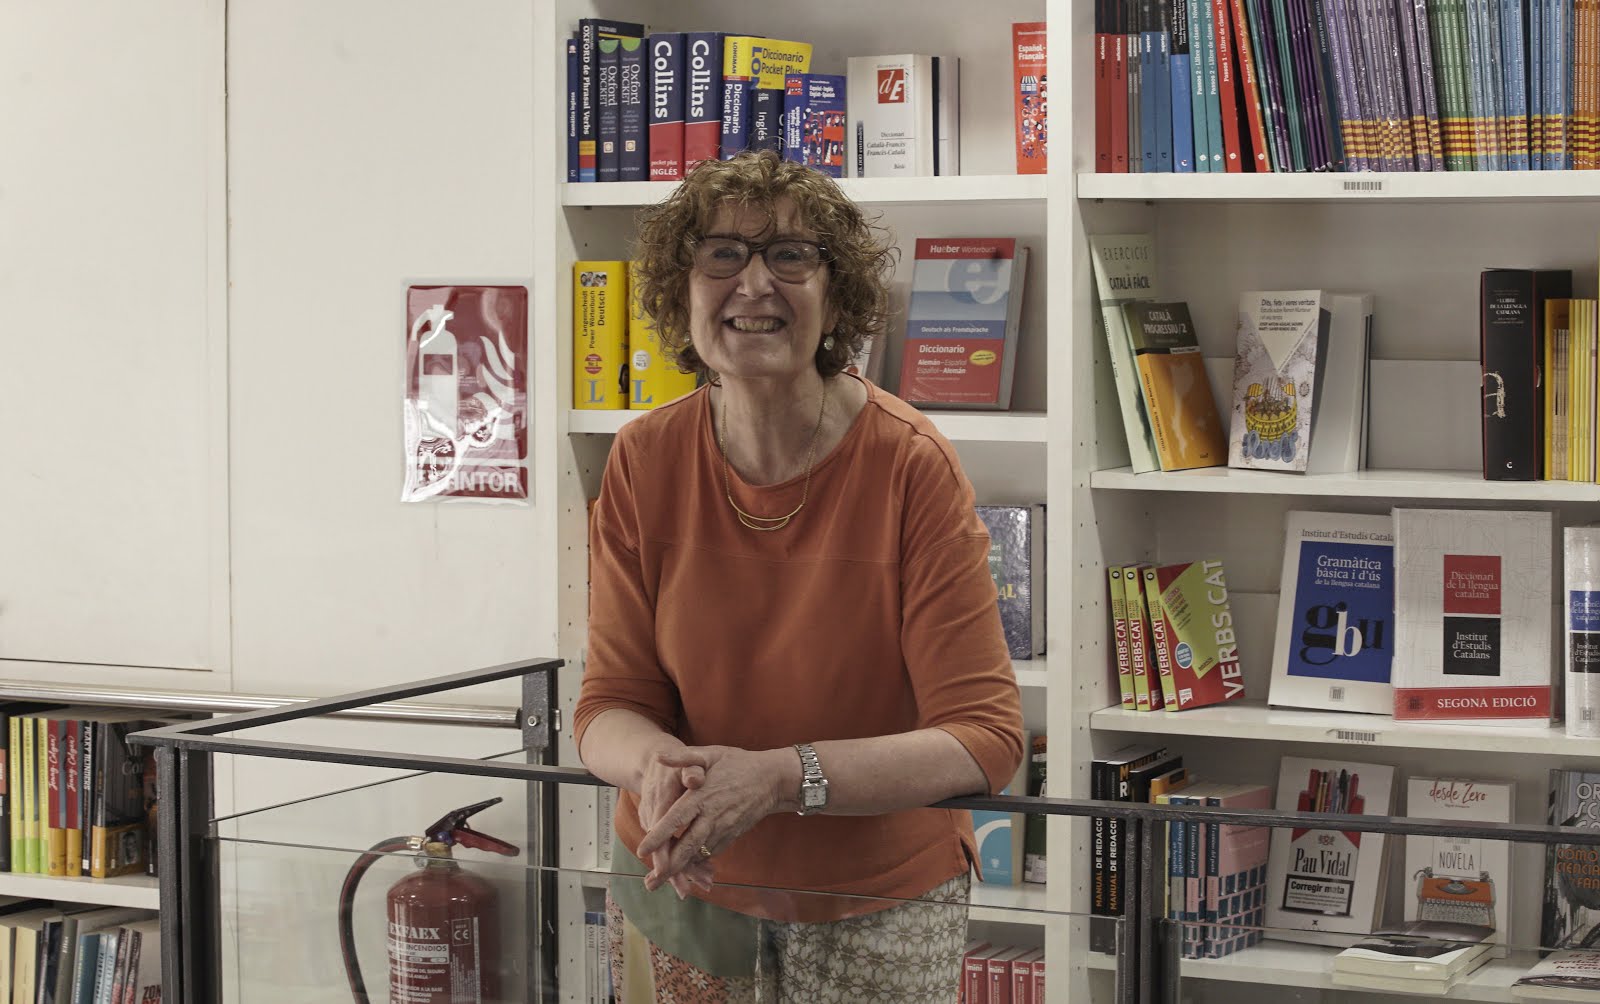 Entrevistem a Maria Carme Ferrer: “El confinament ha fet que el lector se senti amb la necessitat de donar suport a la seva llibreria de barri aquest Sant Jordi”